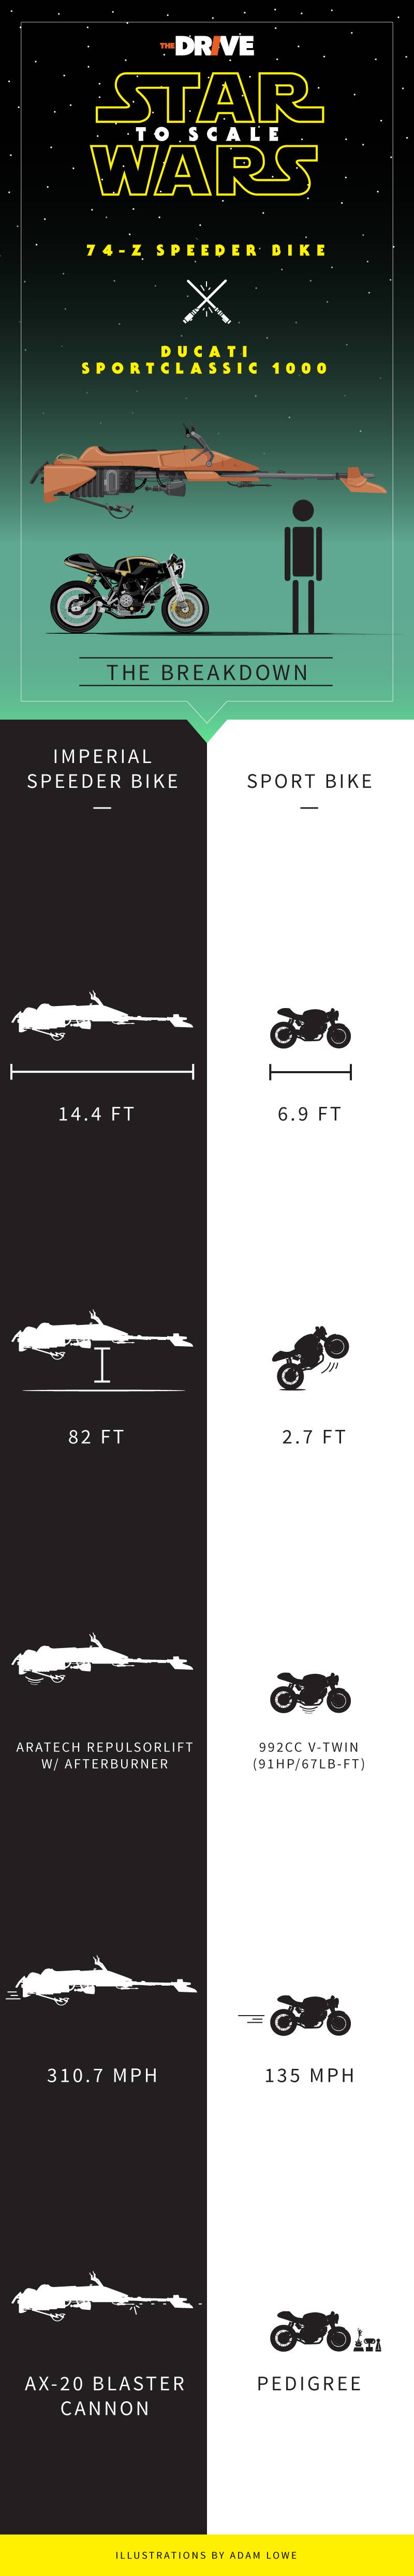 starwars_comparisons_ducati_vs_speederbike_v3.jpg